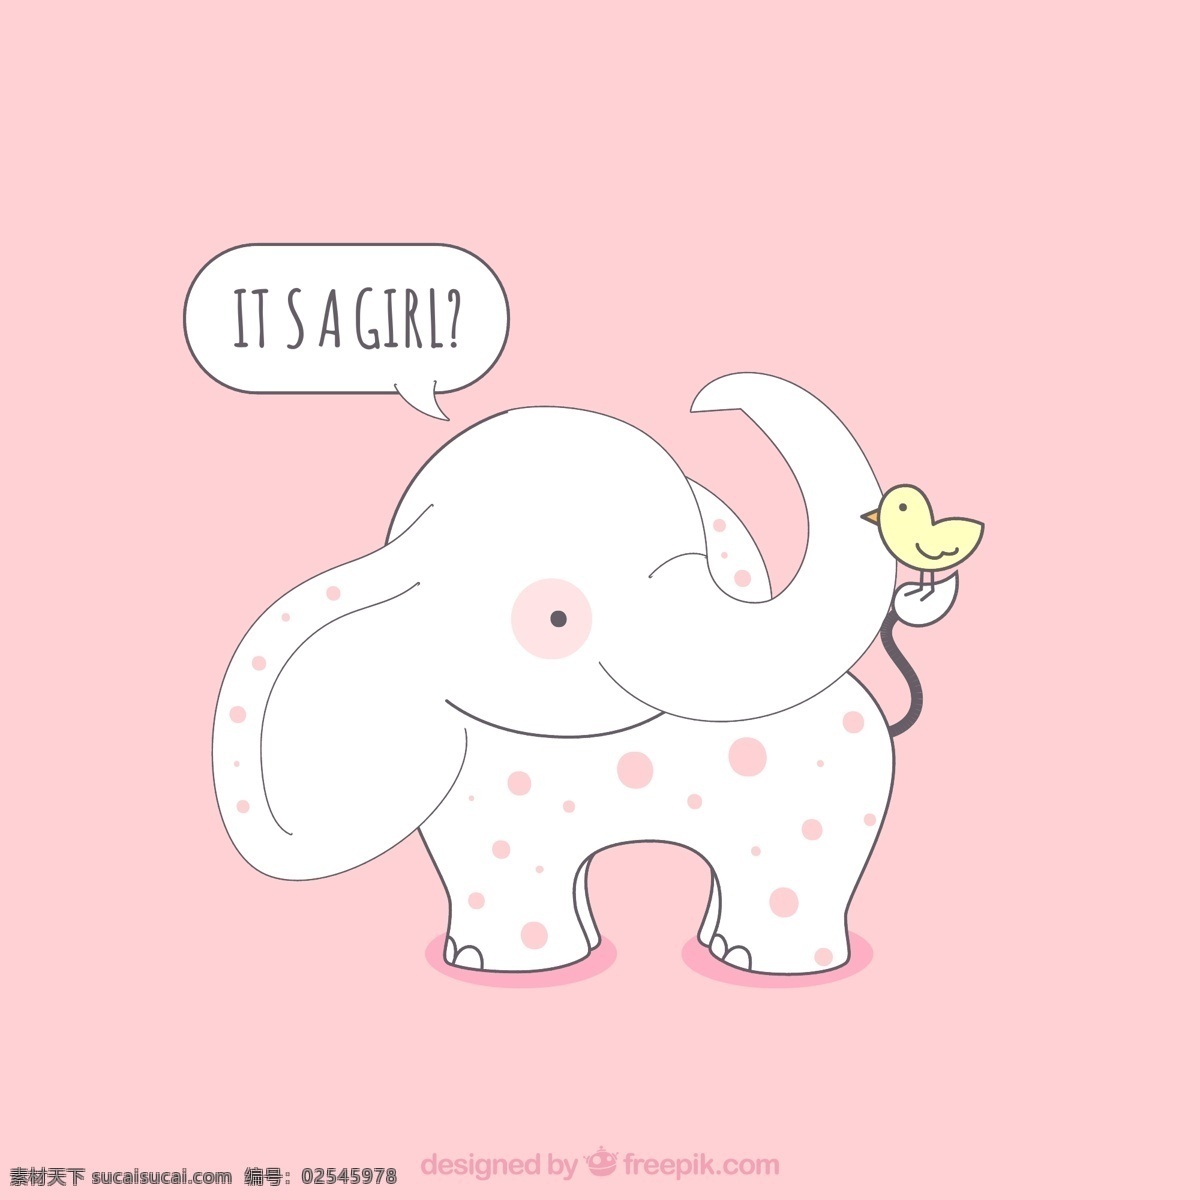 卡通 大象 迎 婴 卡片 矢量图 卡通类 粉大象 迎婴 可爱 友好 白色